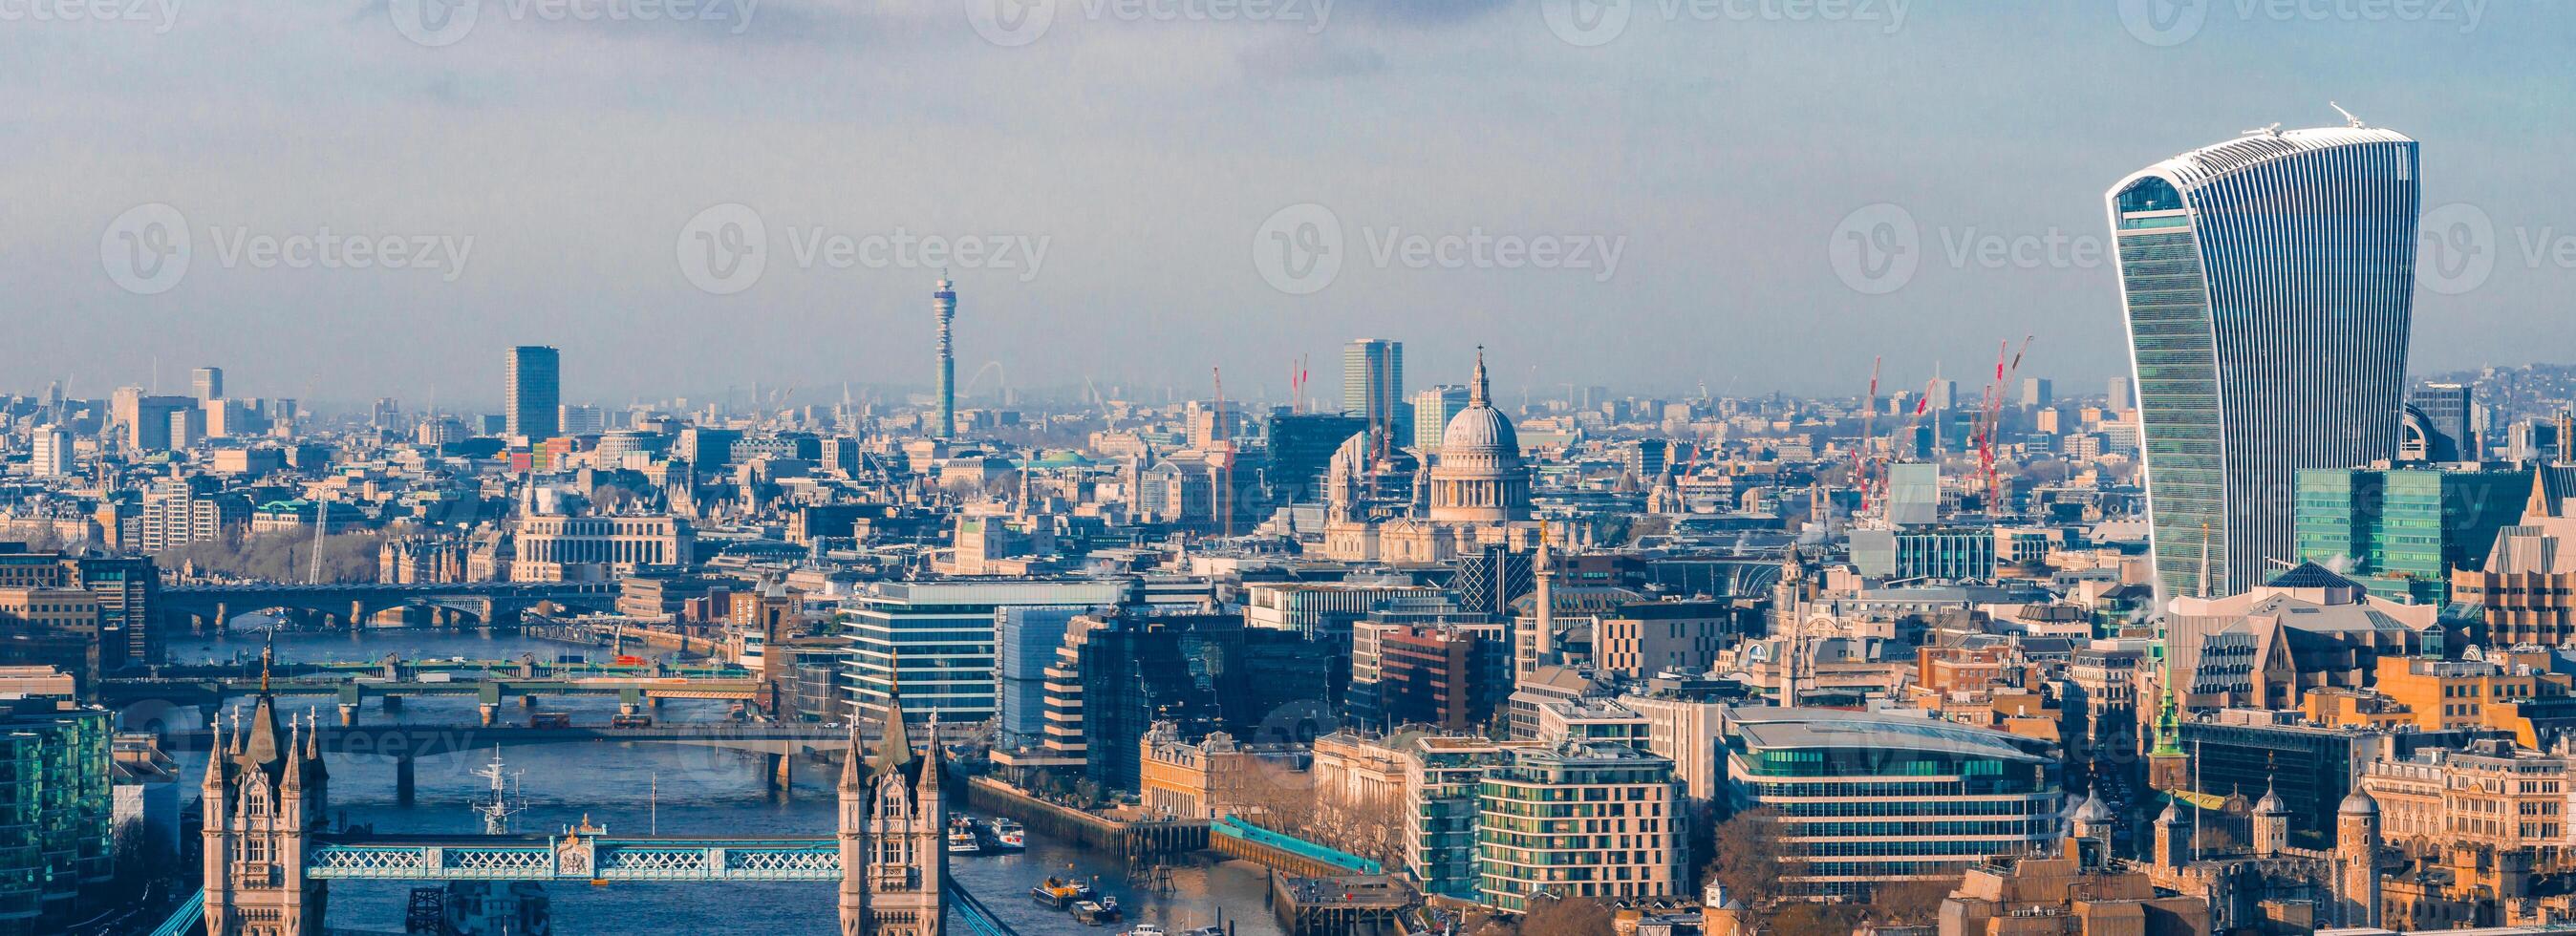 aereo Visualizza di il iconico Torre ponte collegamento londinese con Southwark foto